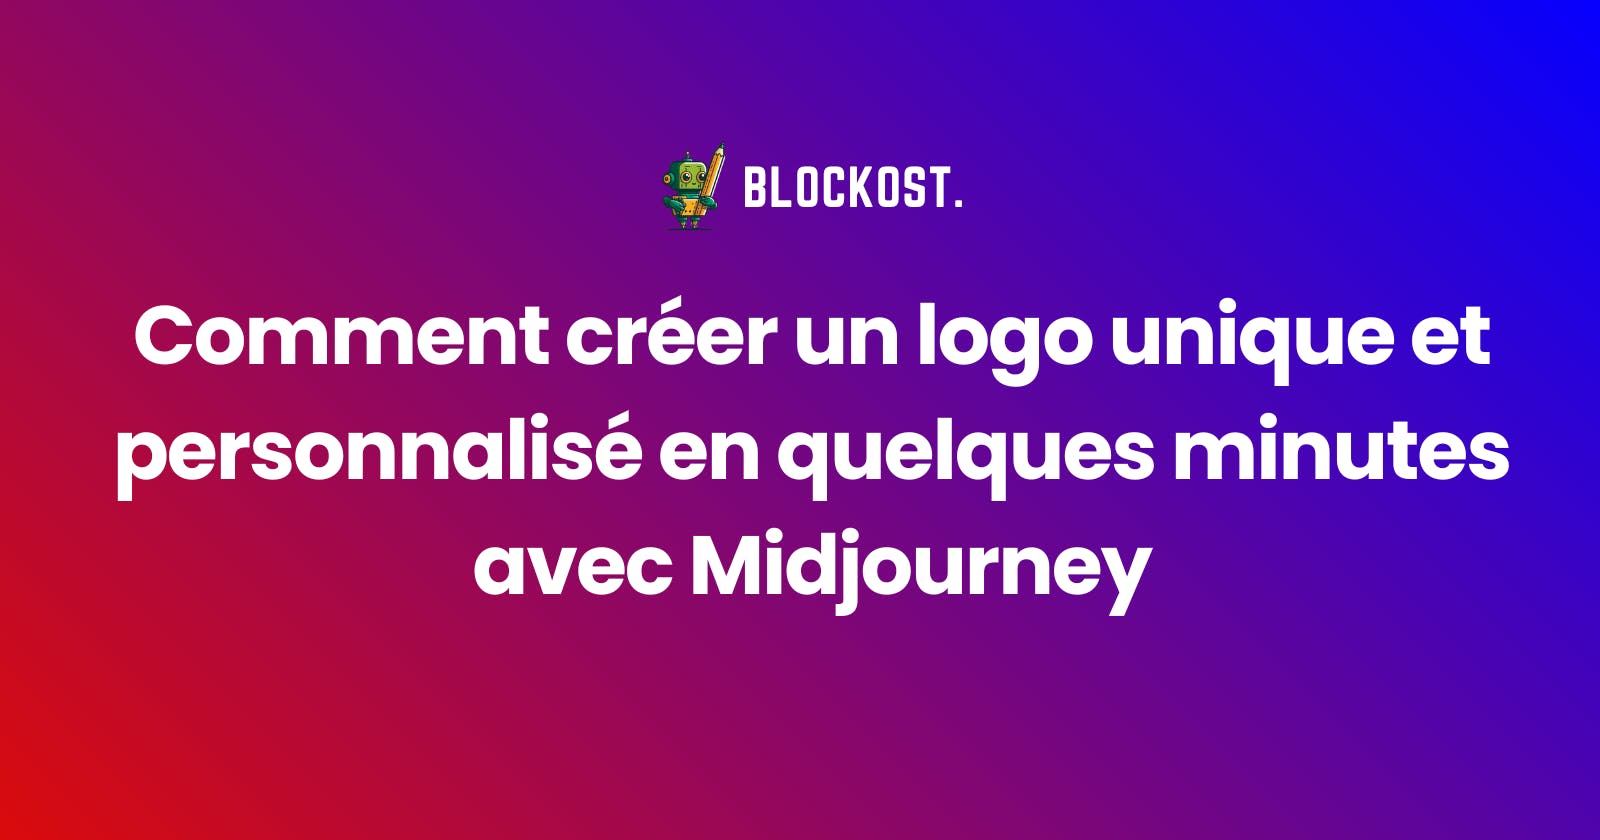 Comment créer un logo unique et personnalisé en quelques minutes avec Midjourney